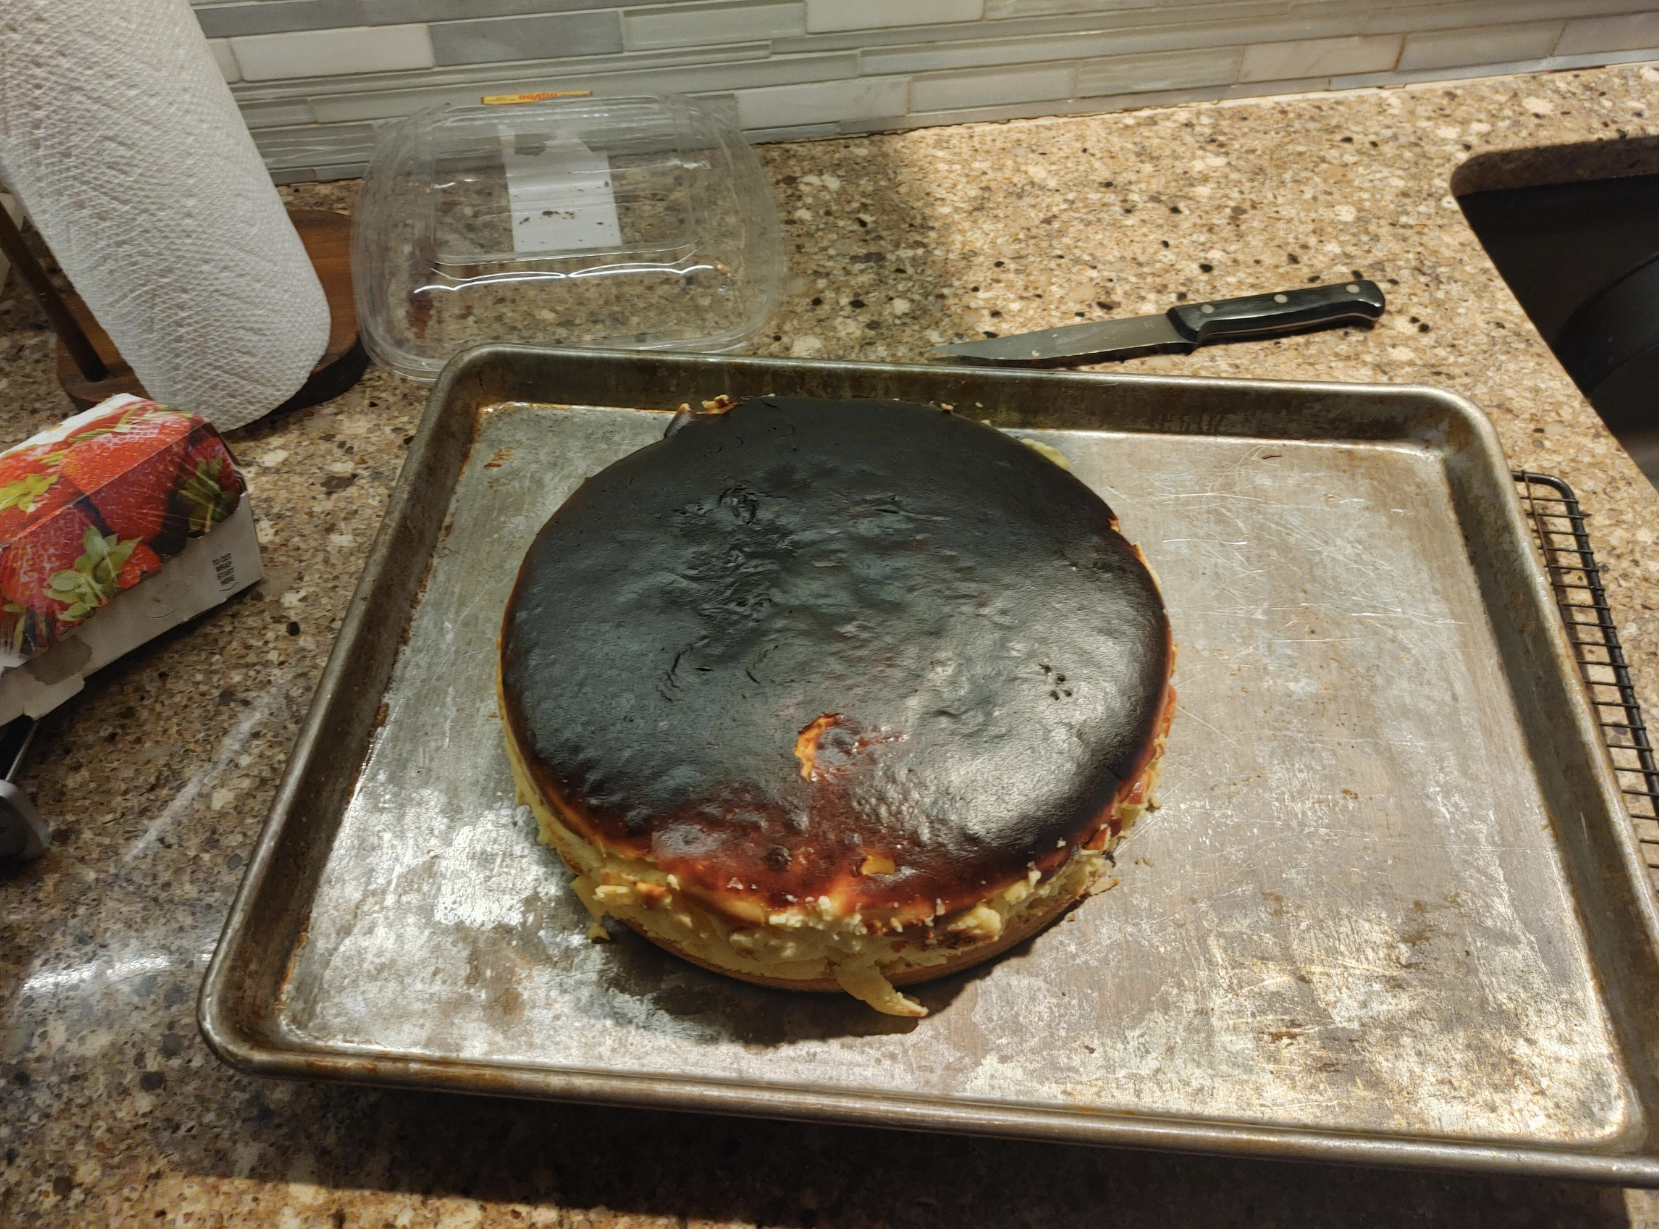 A burnt cheesecake